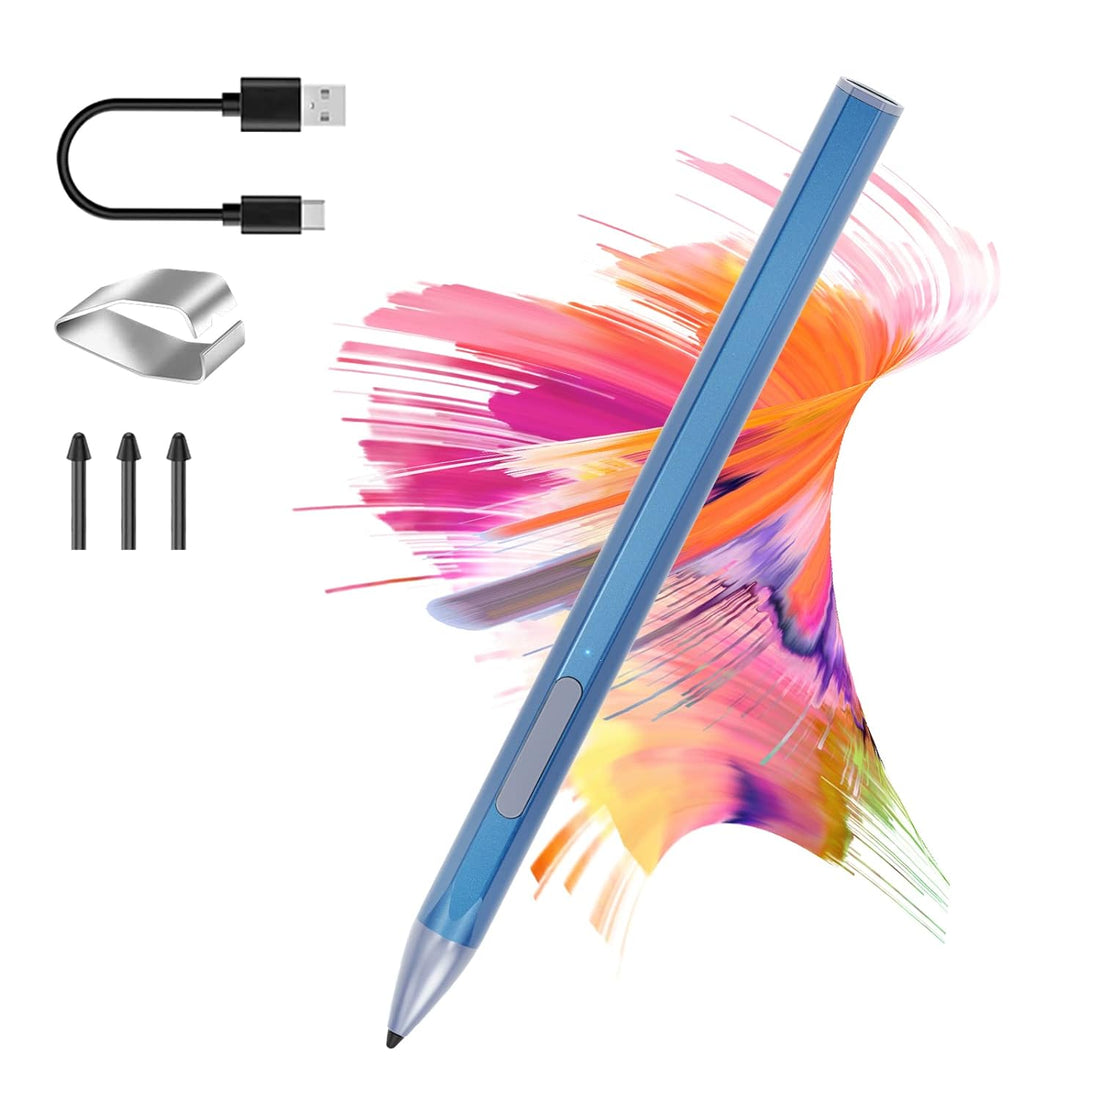 Stylus Pen for HP Envy X360 Pavilion X360 Specter X360 Spectre X2 Envy X2 Rechargeable MPP 2.0 Tilt Active Pen with 4096 Pressure Sensitivity, Palm Rejection, Magnetic Attachment Function, Blue